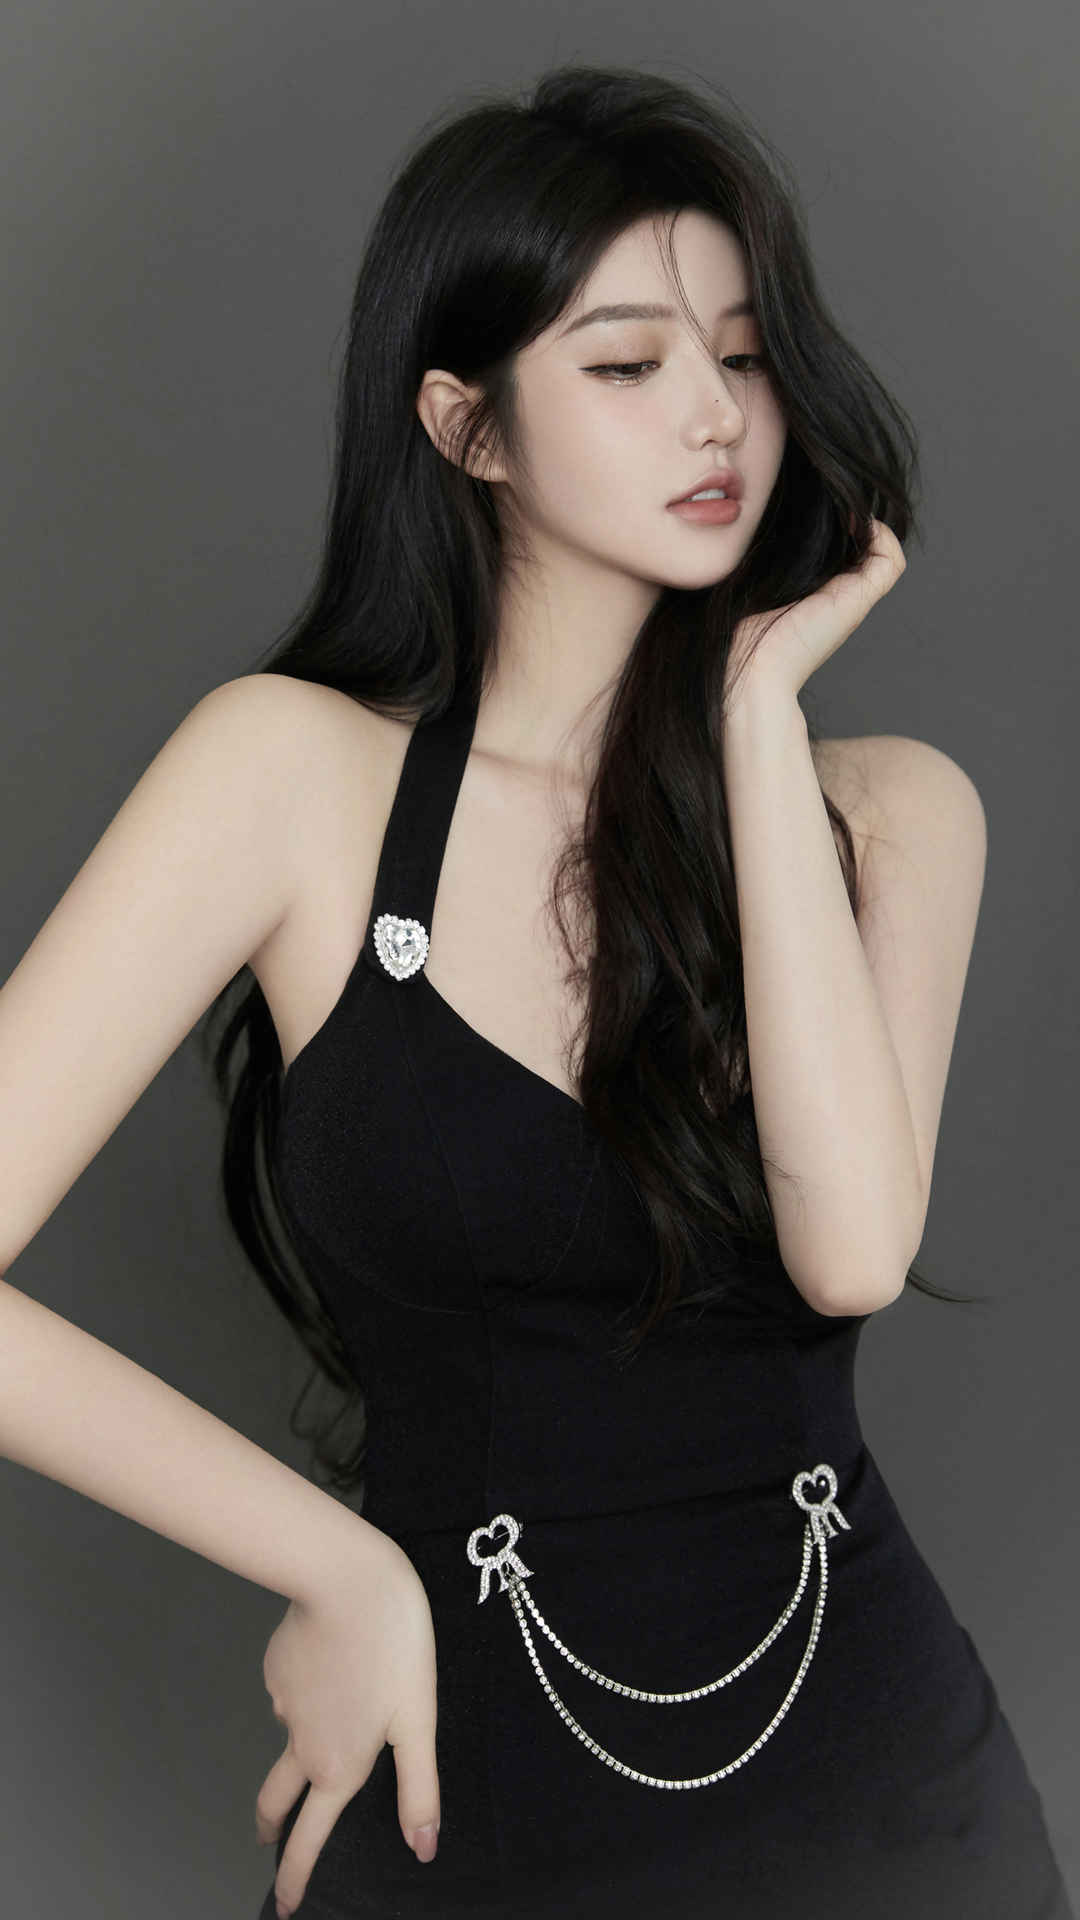 Nanki 黑色裙子时尚好身材4k手机壁纸美女-